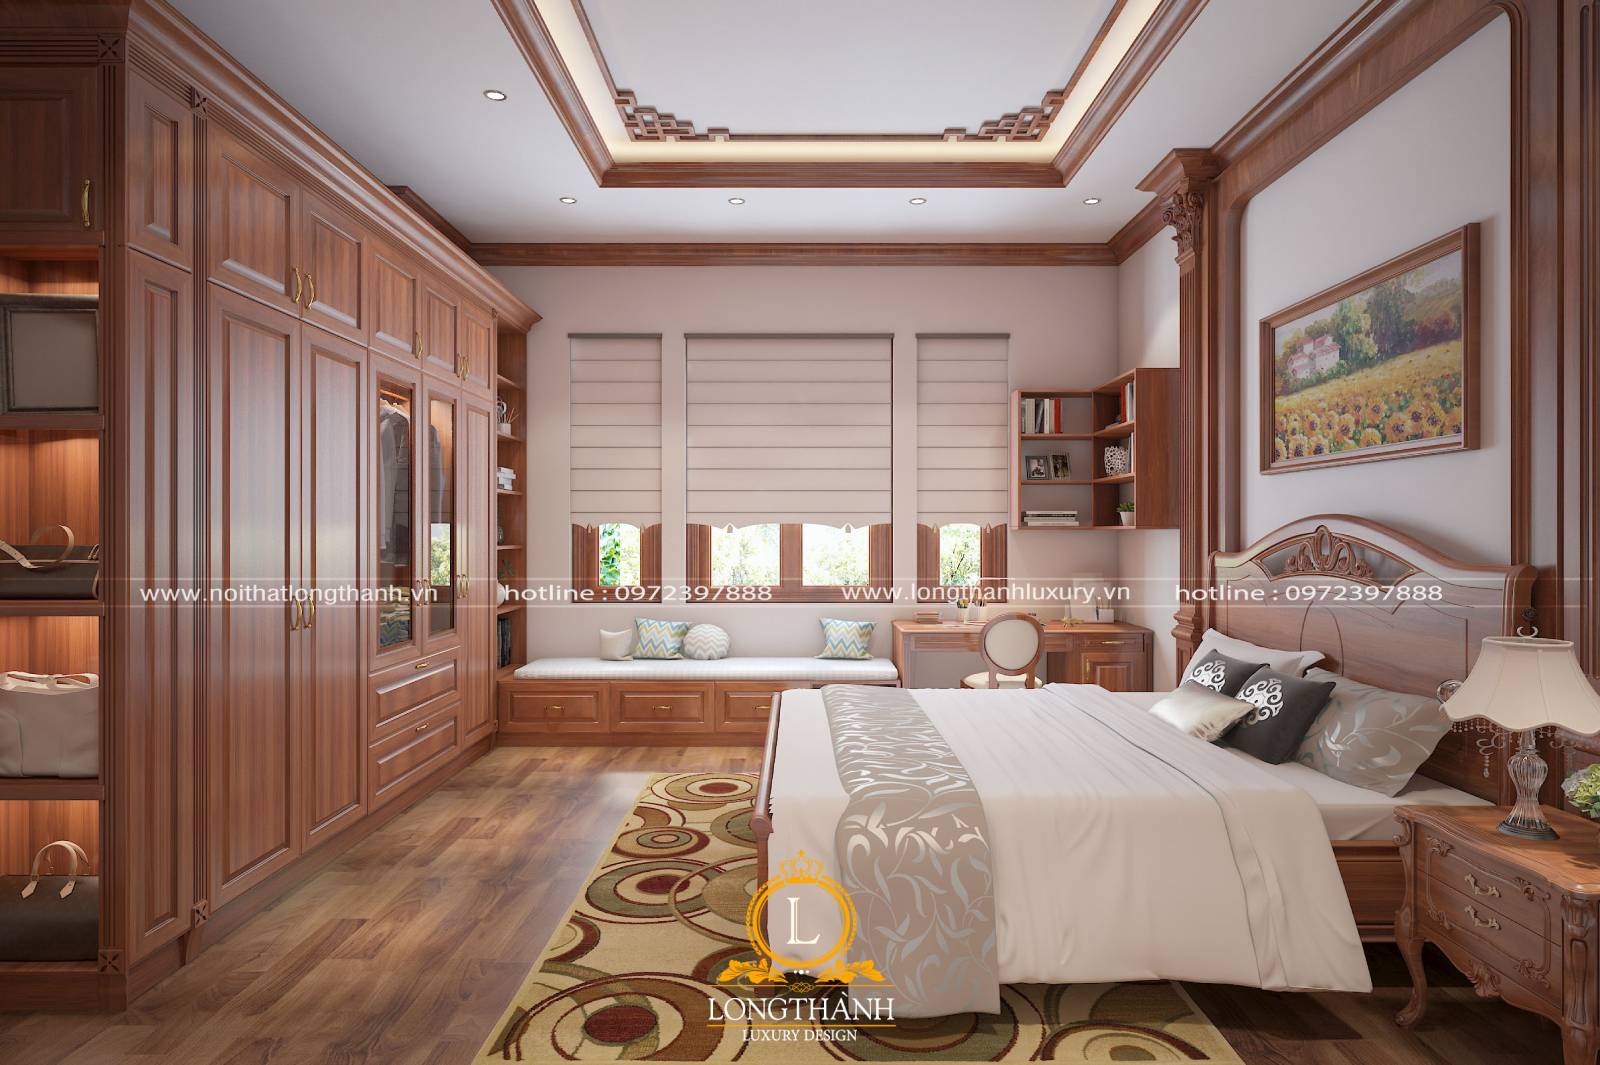 Thiết kế phòng ngủ master phong cách tân cổ điển được nhiều người yêu thích